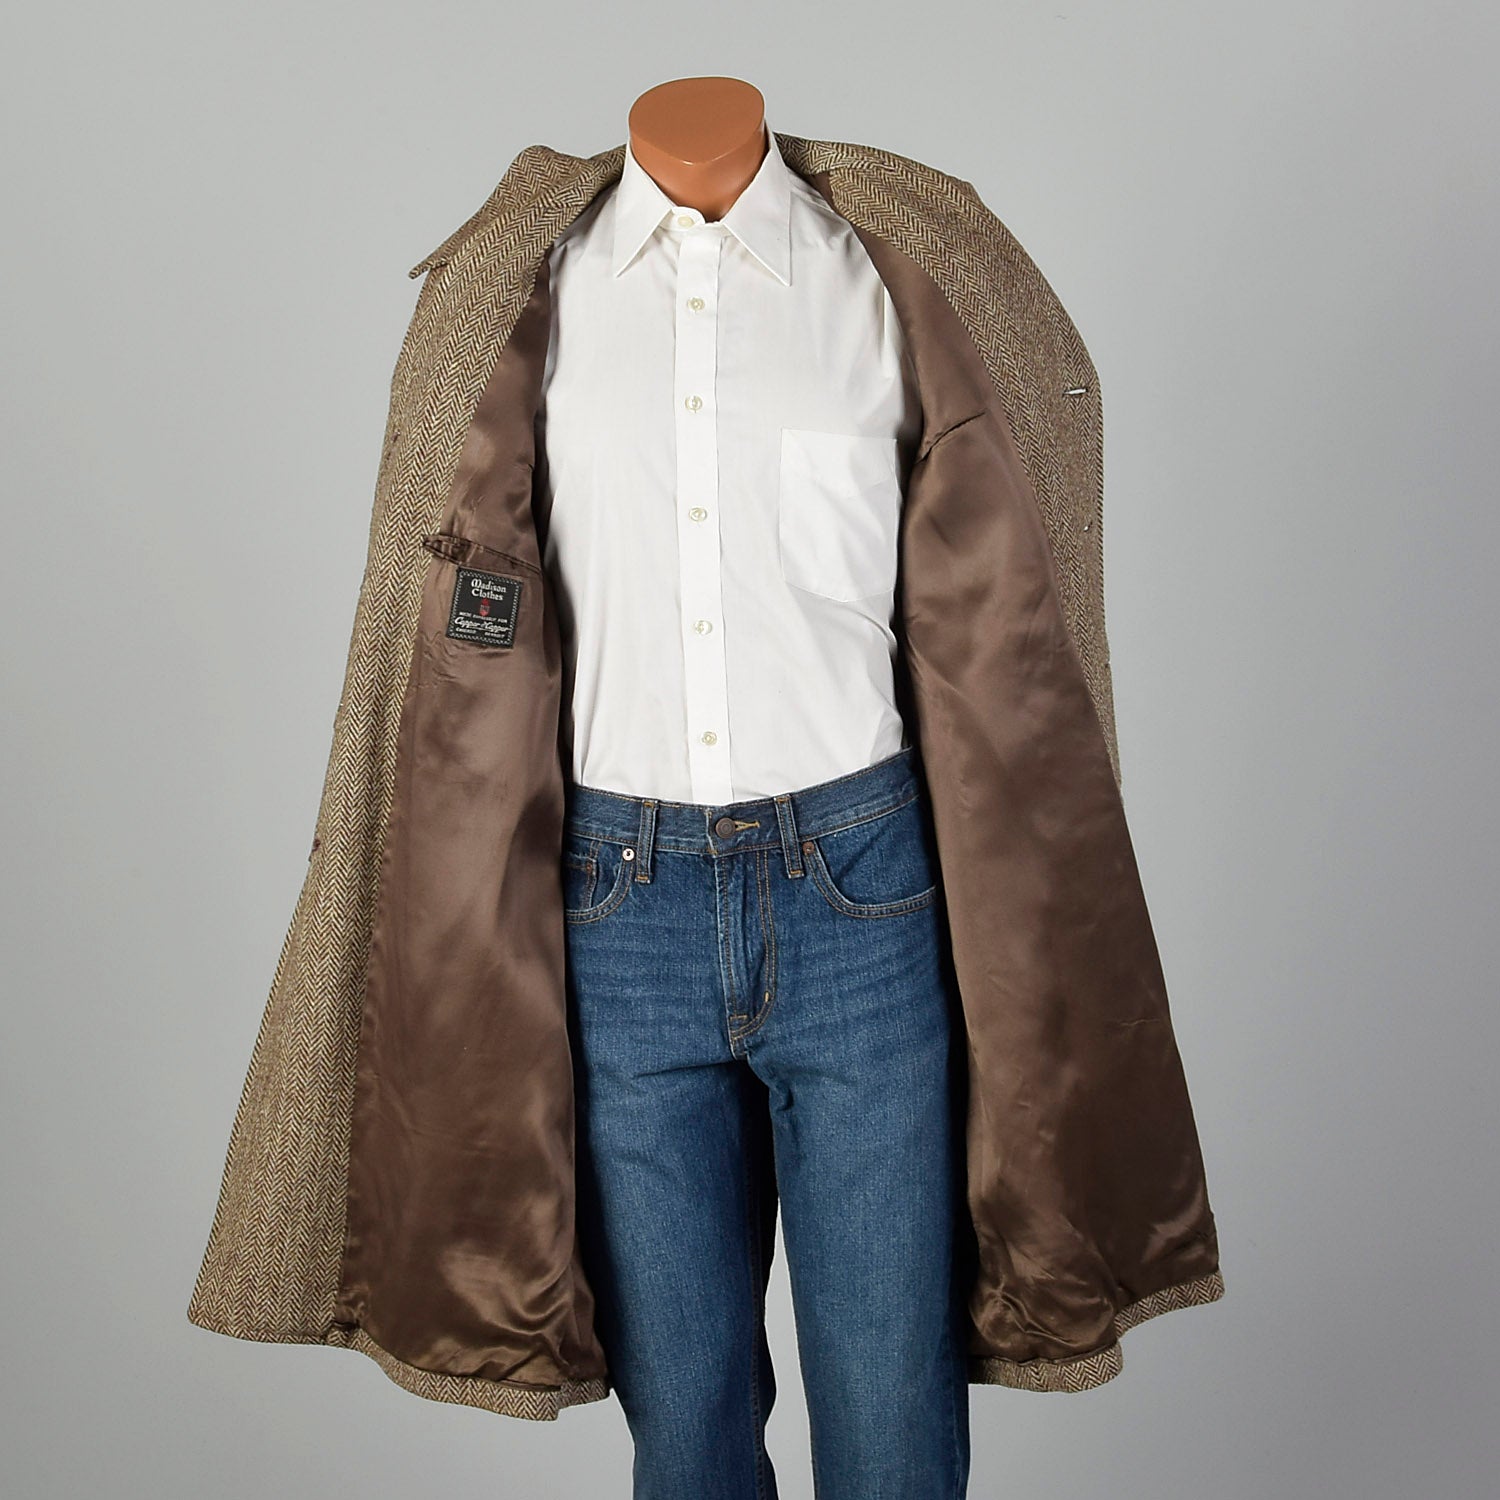 41 Medium 1950s Mens Brown Wool Tweed Coat